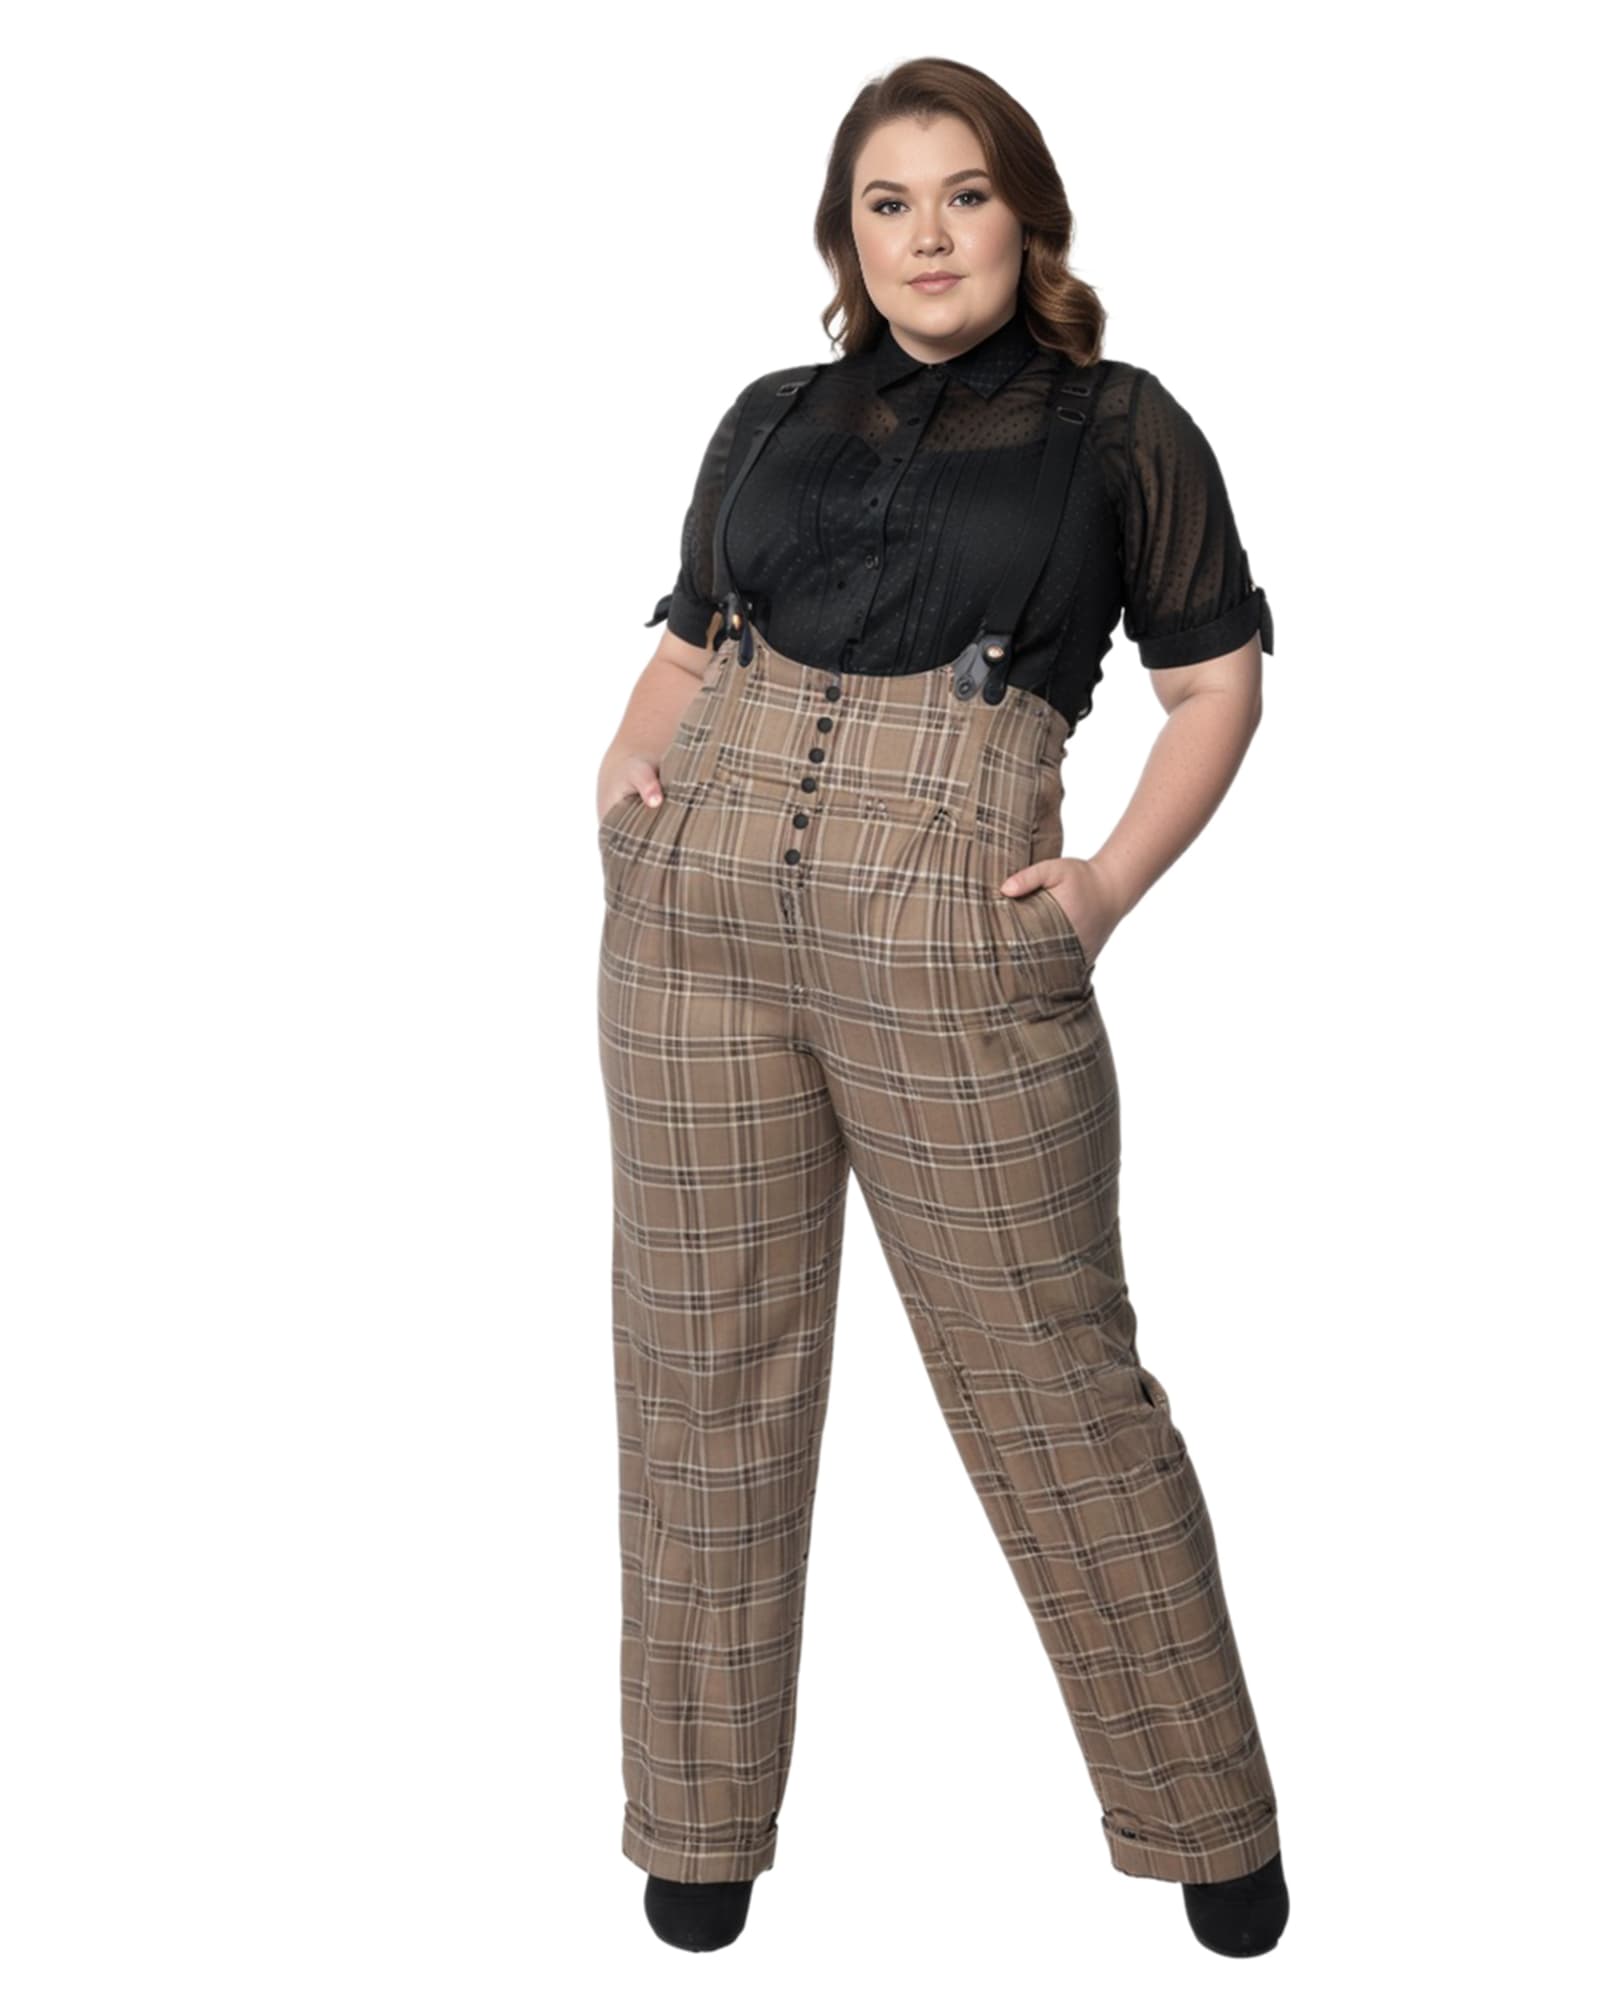 Unique Vintage Black Wide Leg Rochelle Suspender Pants